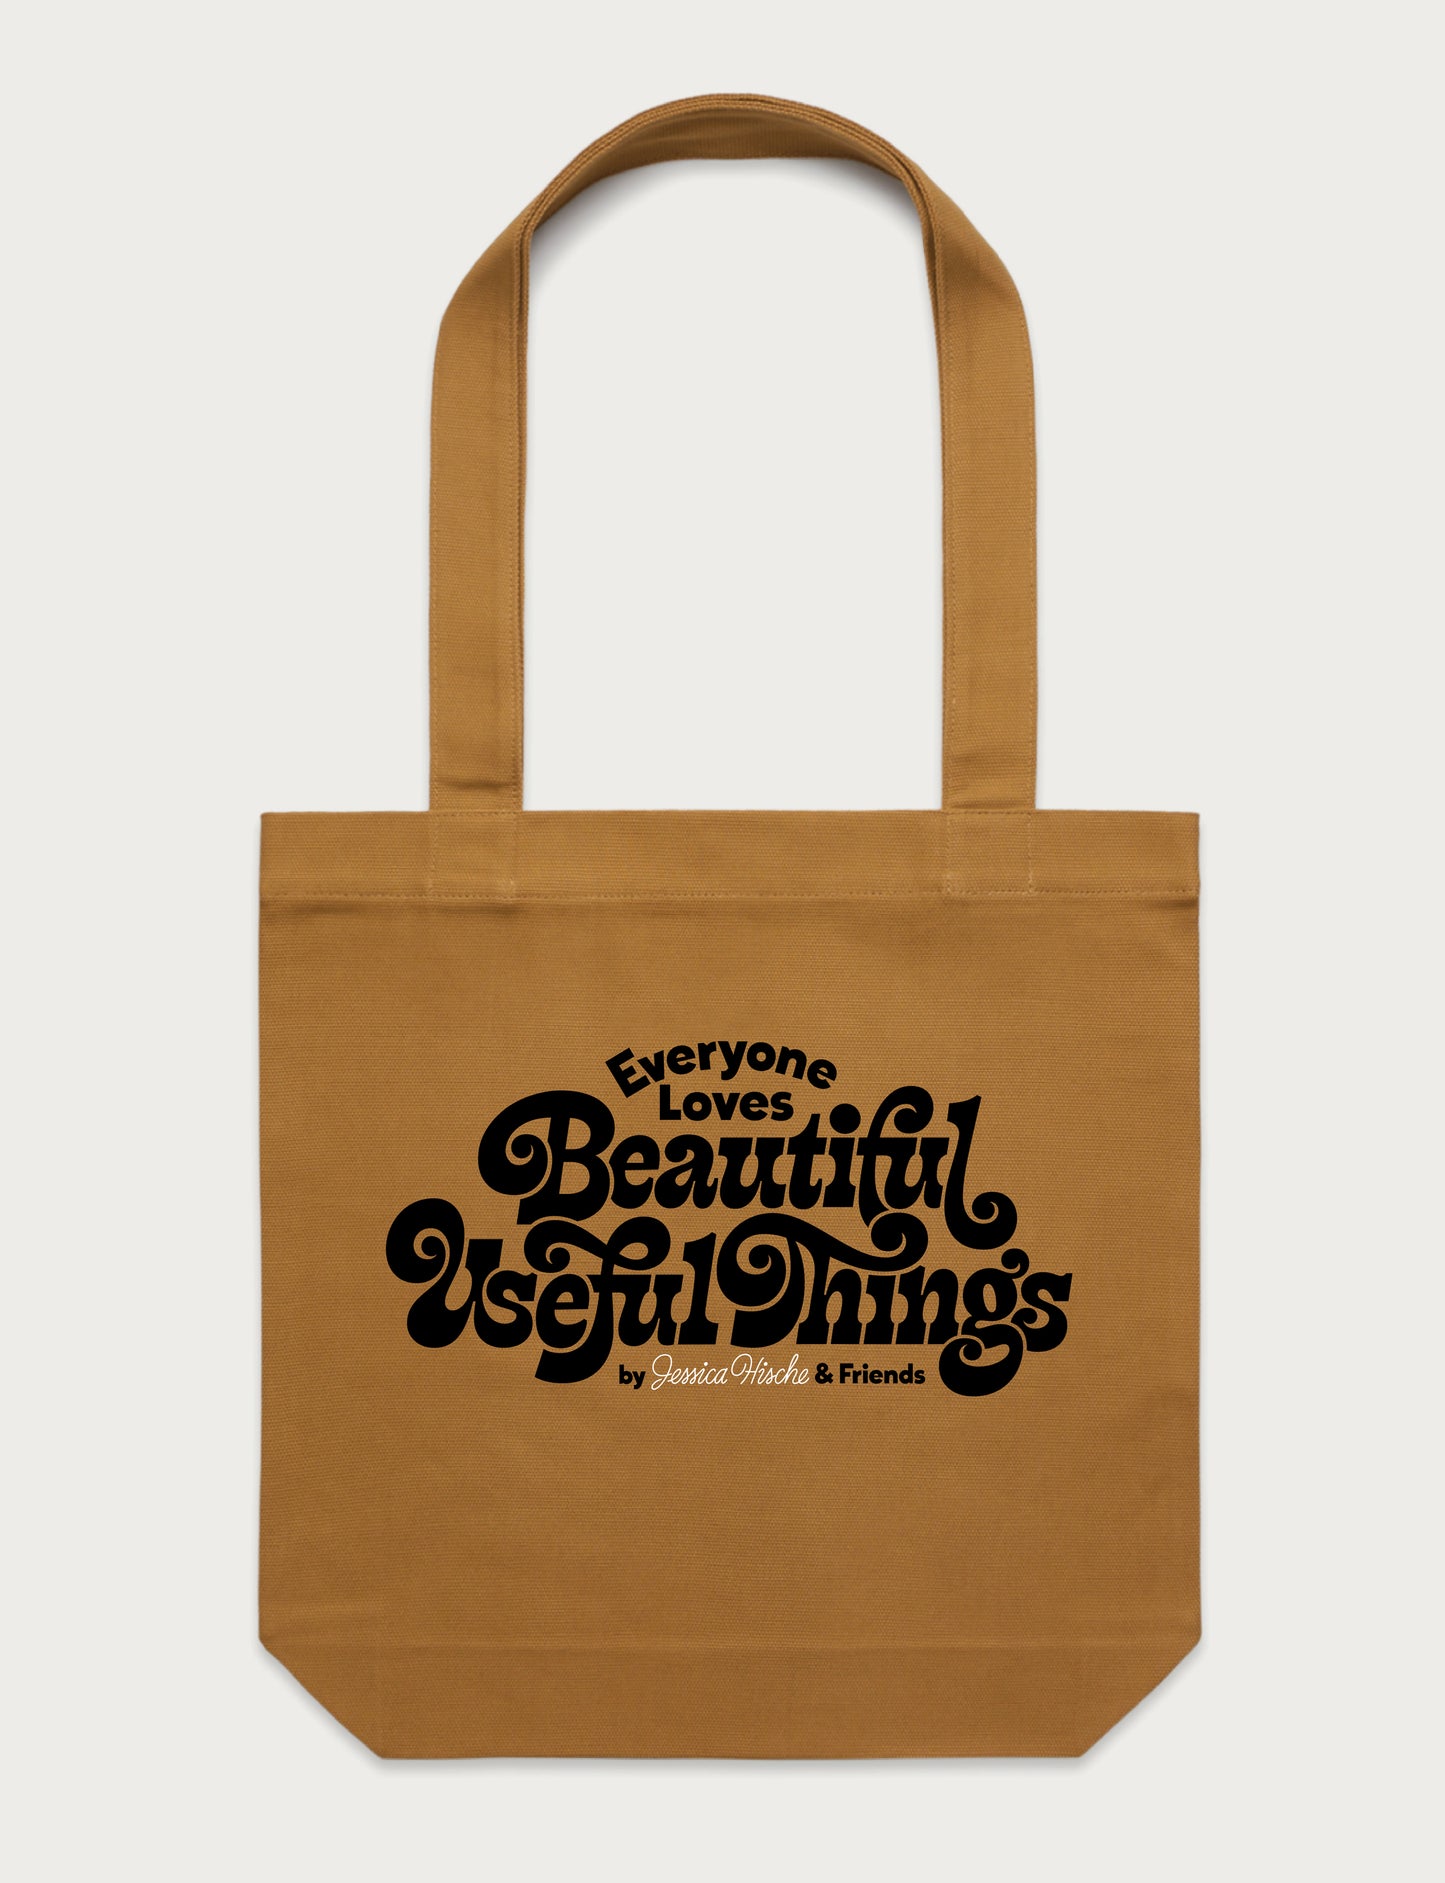 Beautiful Useful Things Tote Bag